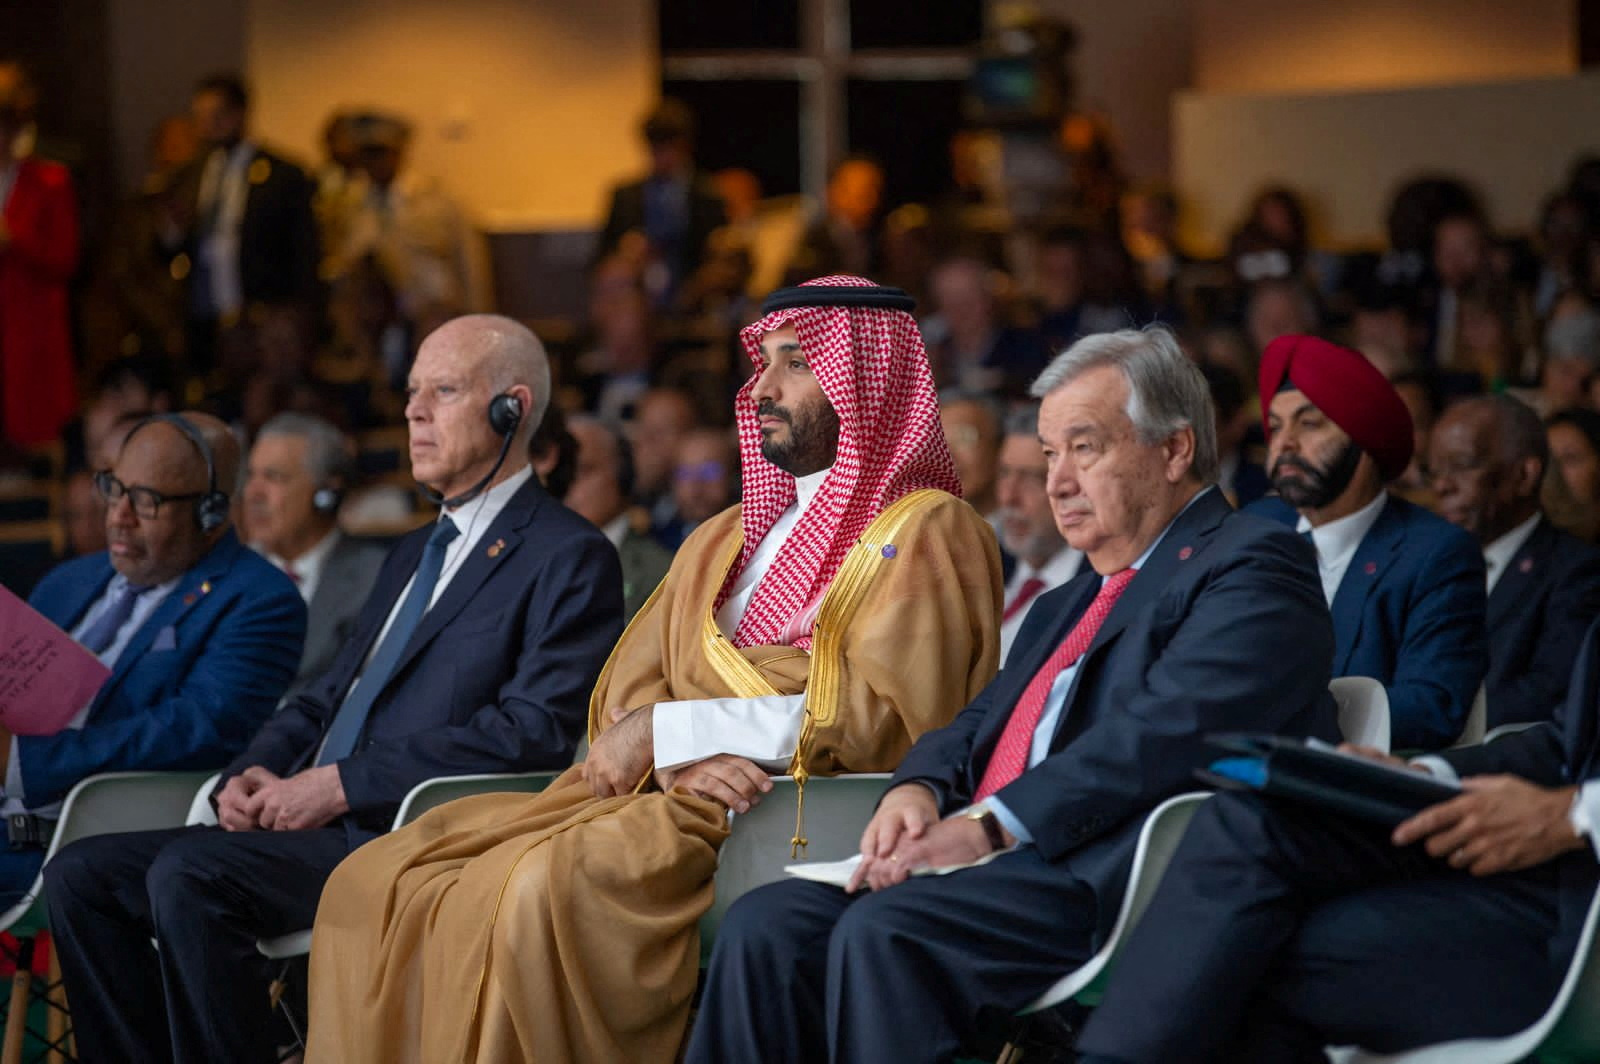 ولي العهد السعودي الأمير محمد بن سلمان يحضر "قمة الميثاق المالي العالمي الجديد" التي أقيمت في باريس، فرنسا، 22 يونيو 2023. وكالة الأنباء السعودية عبر رويترز.